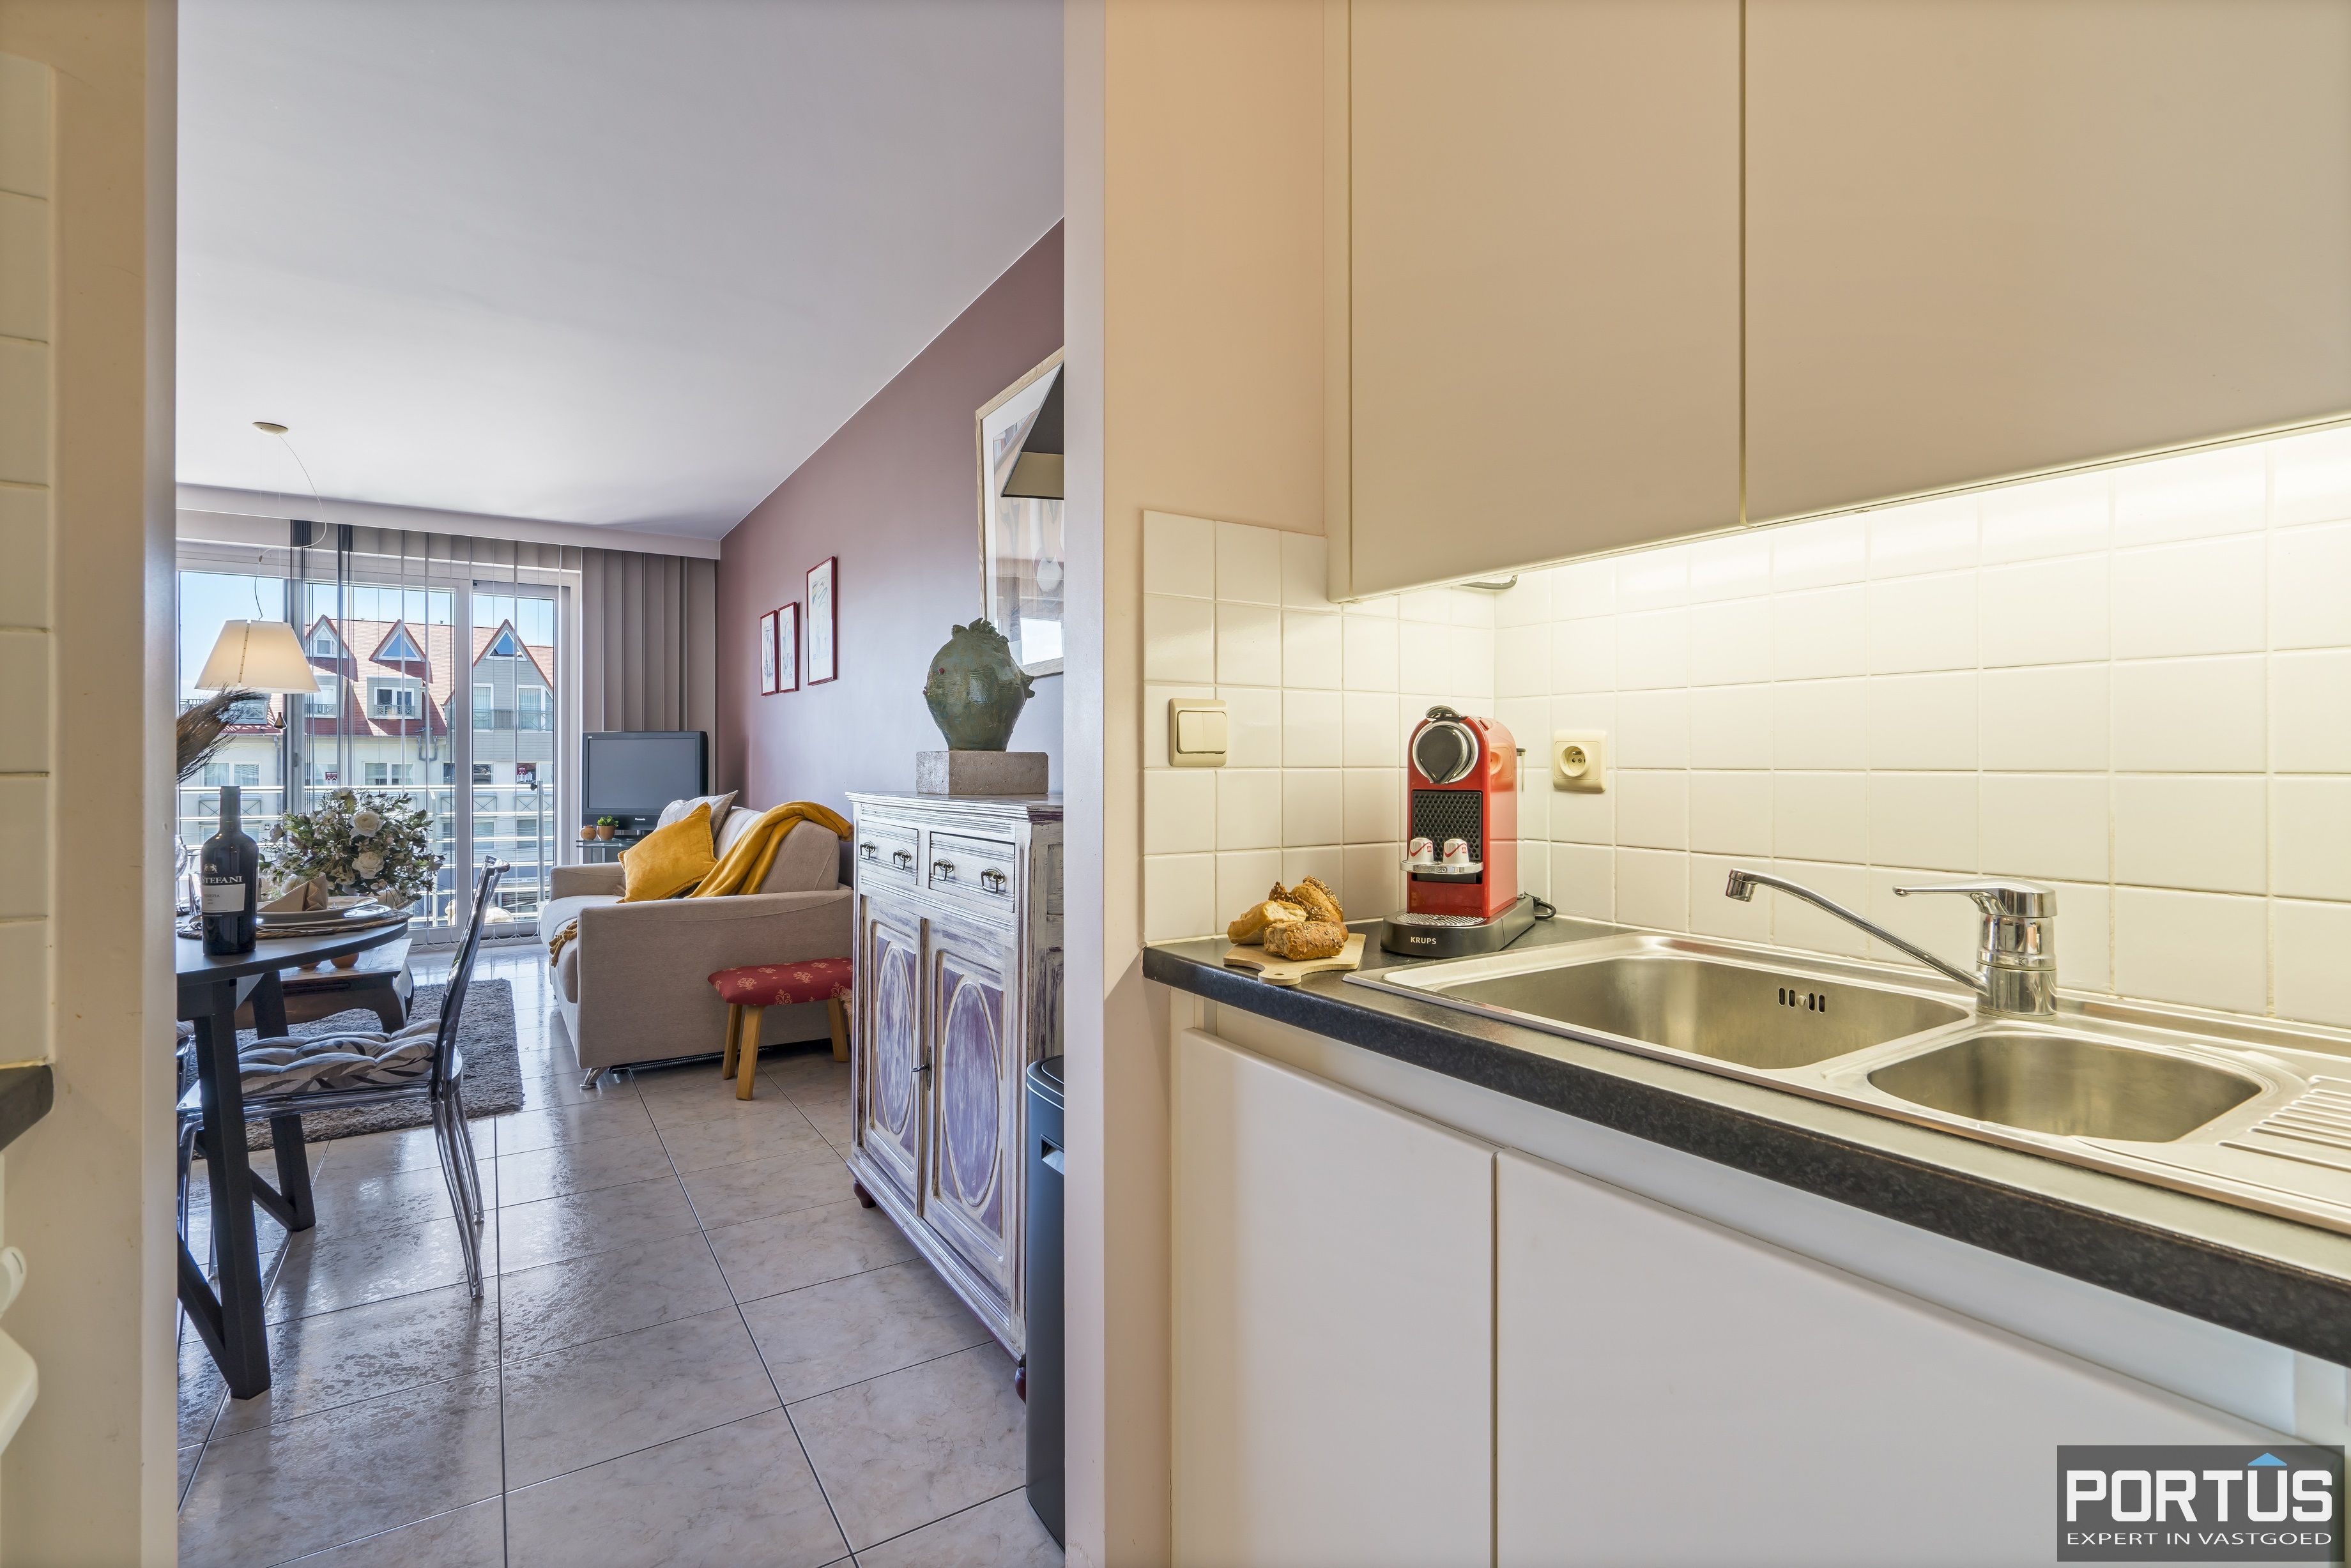 Appartement met 1 slaapkamer te koop te Nieuwpoort - 17373